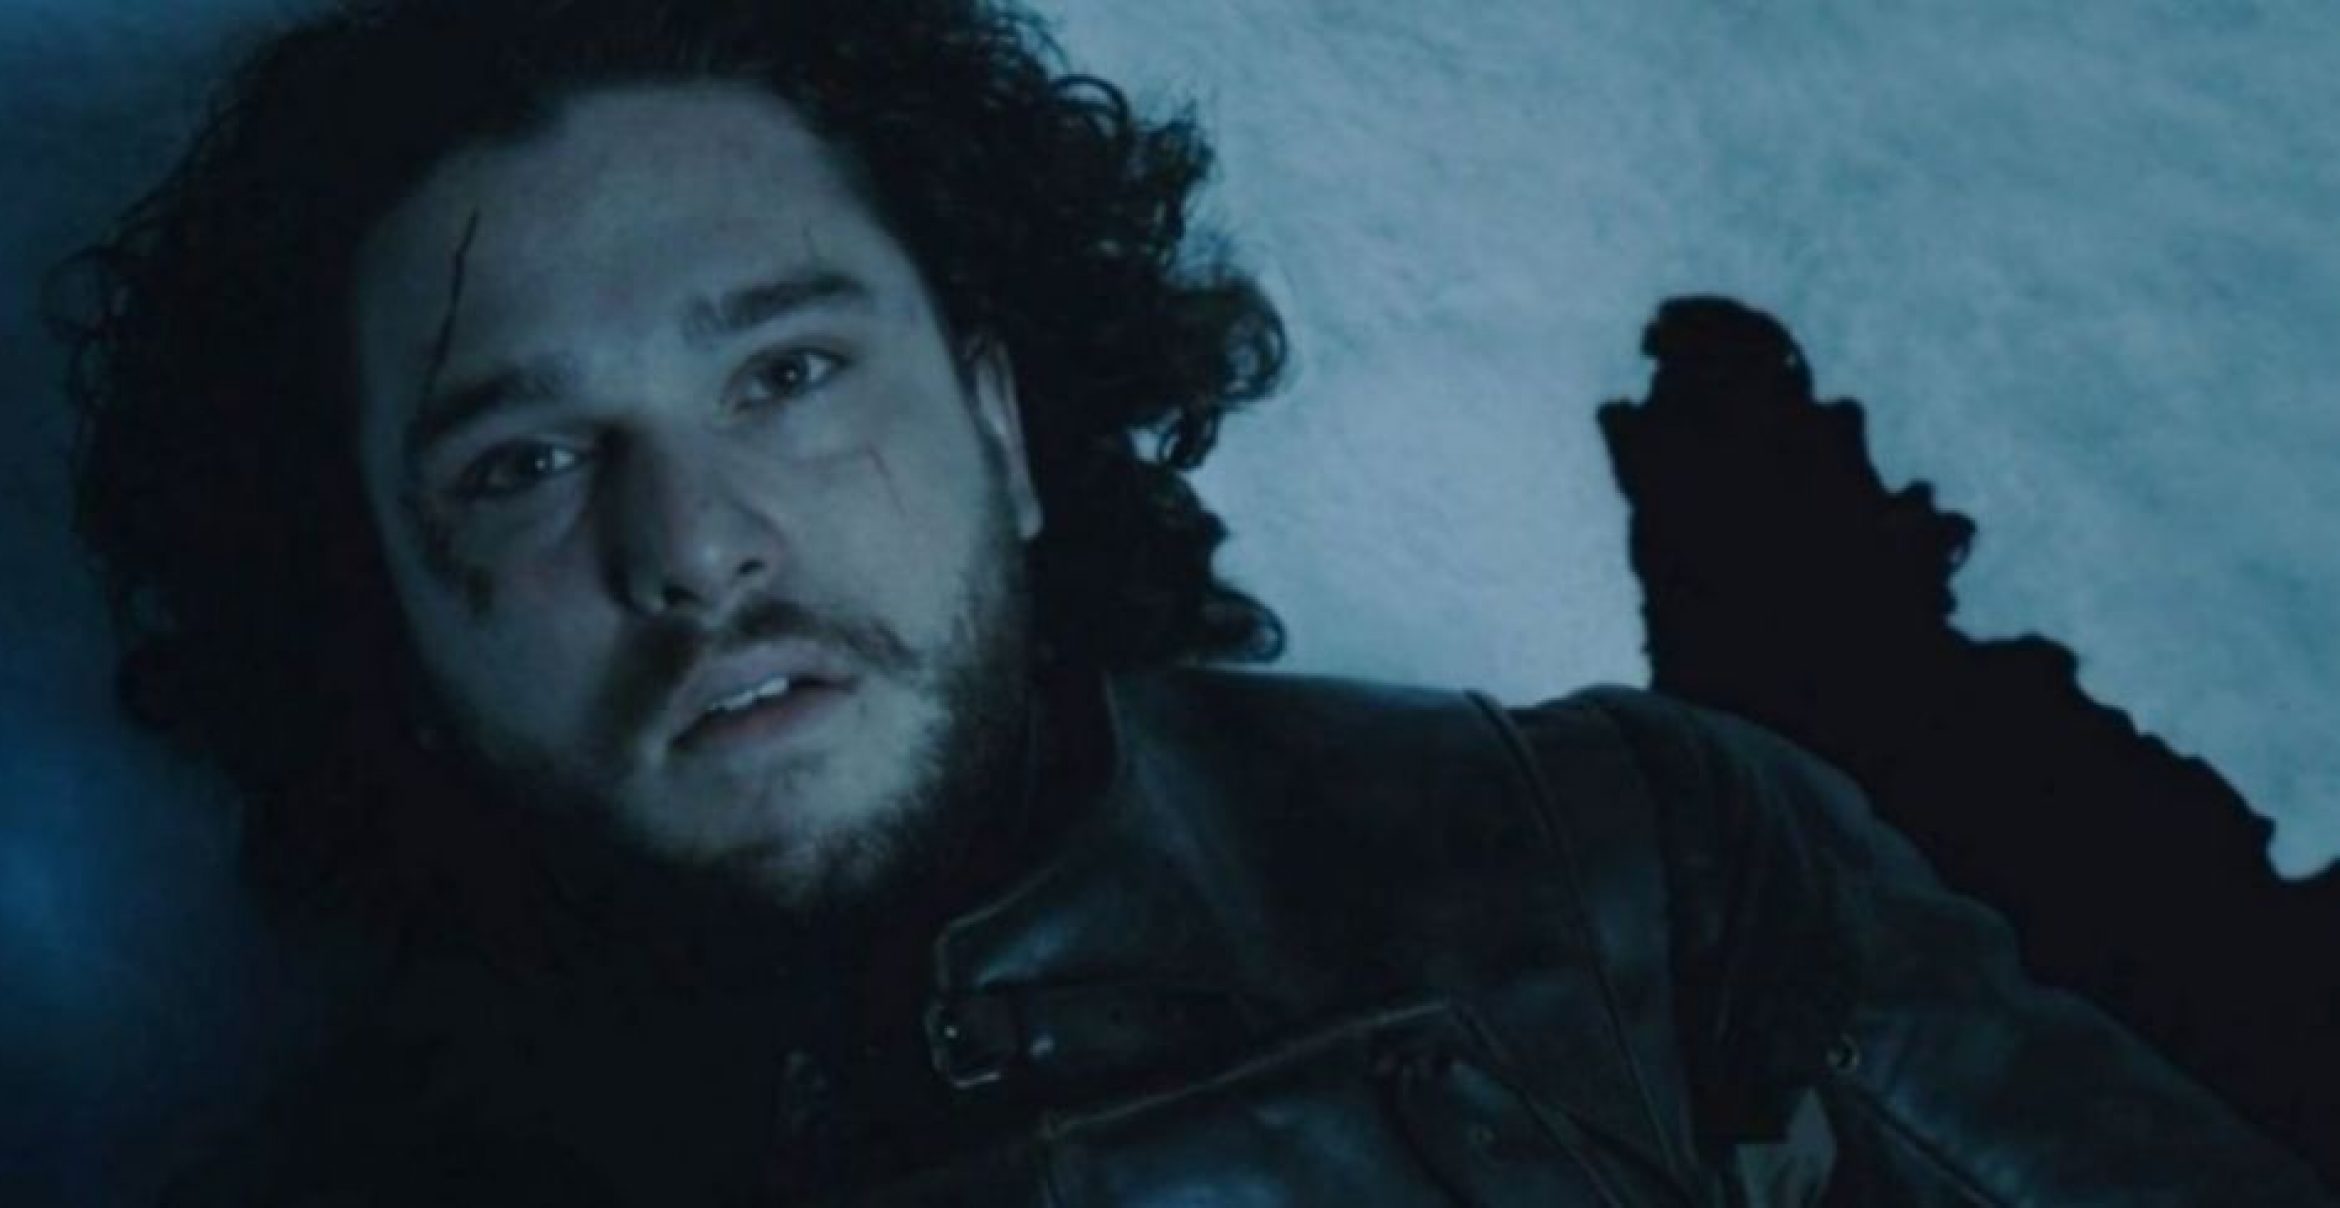 Siri, is Jon Snow really dead?